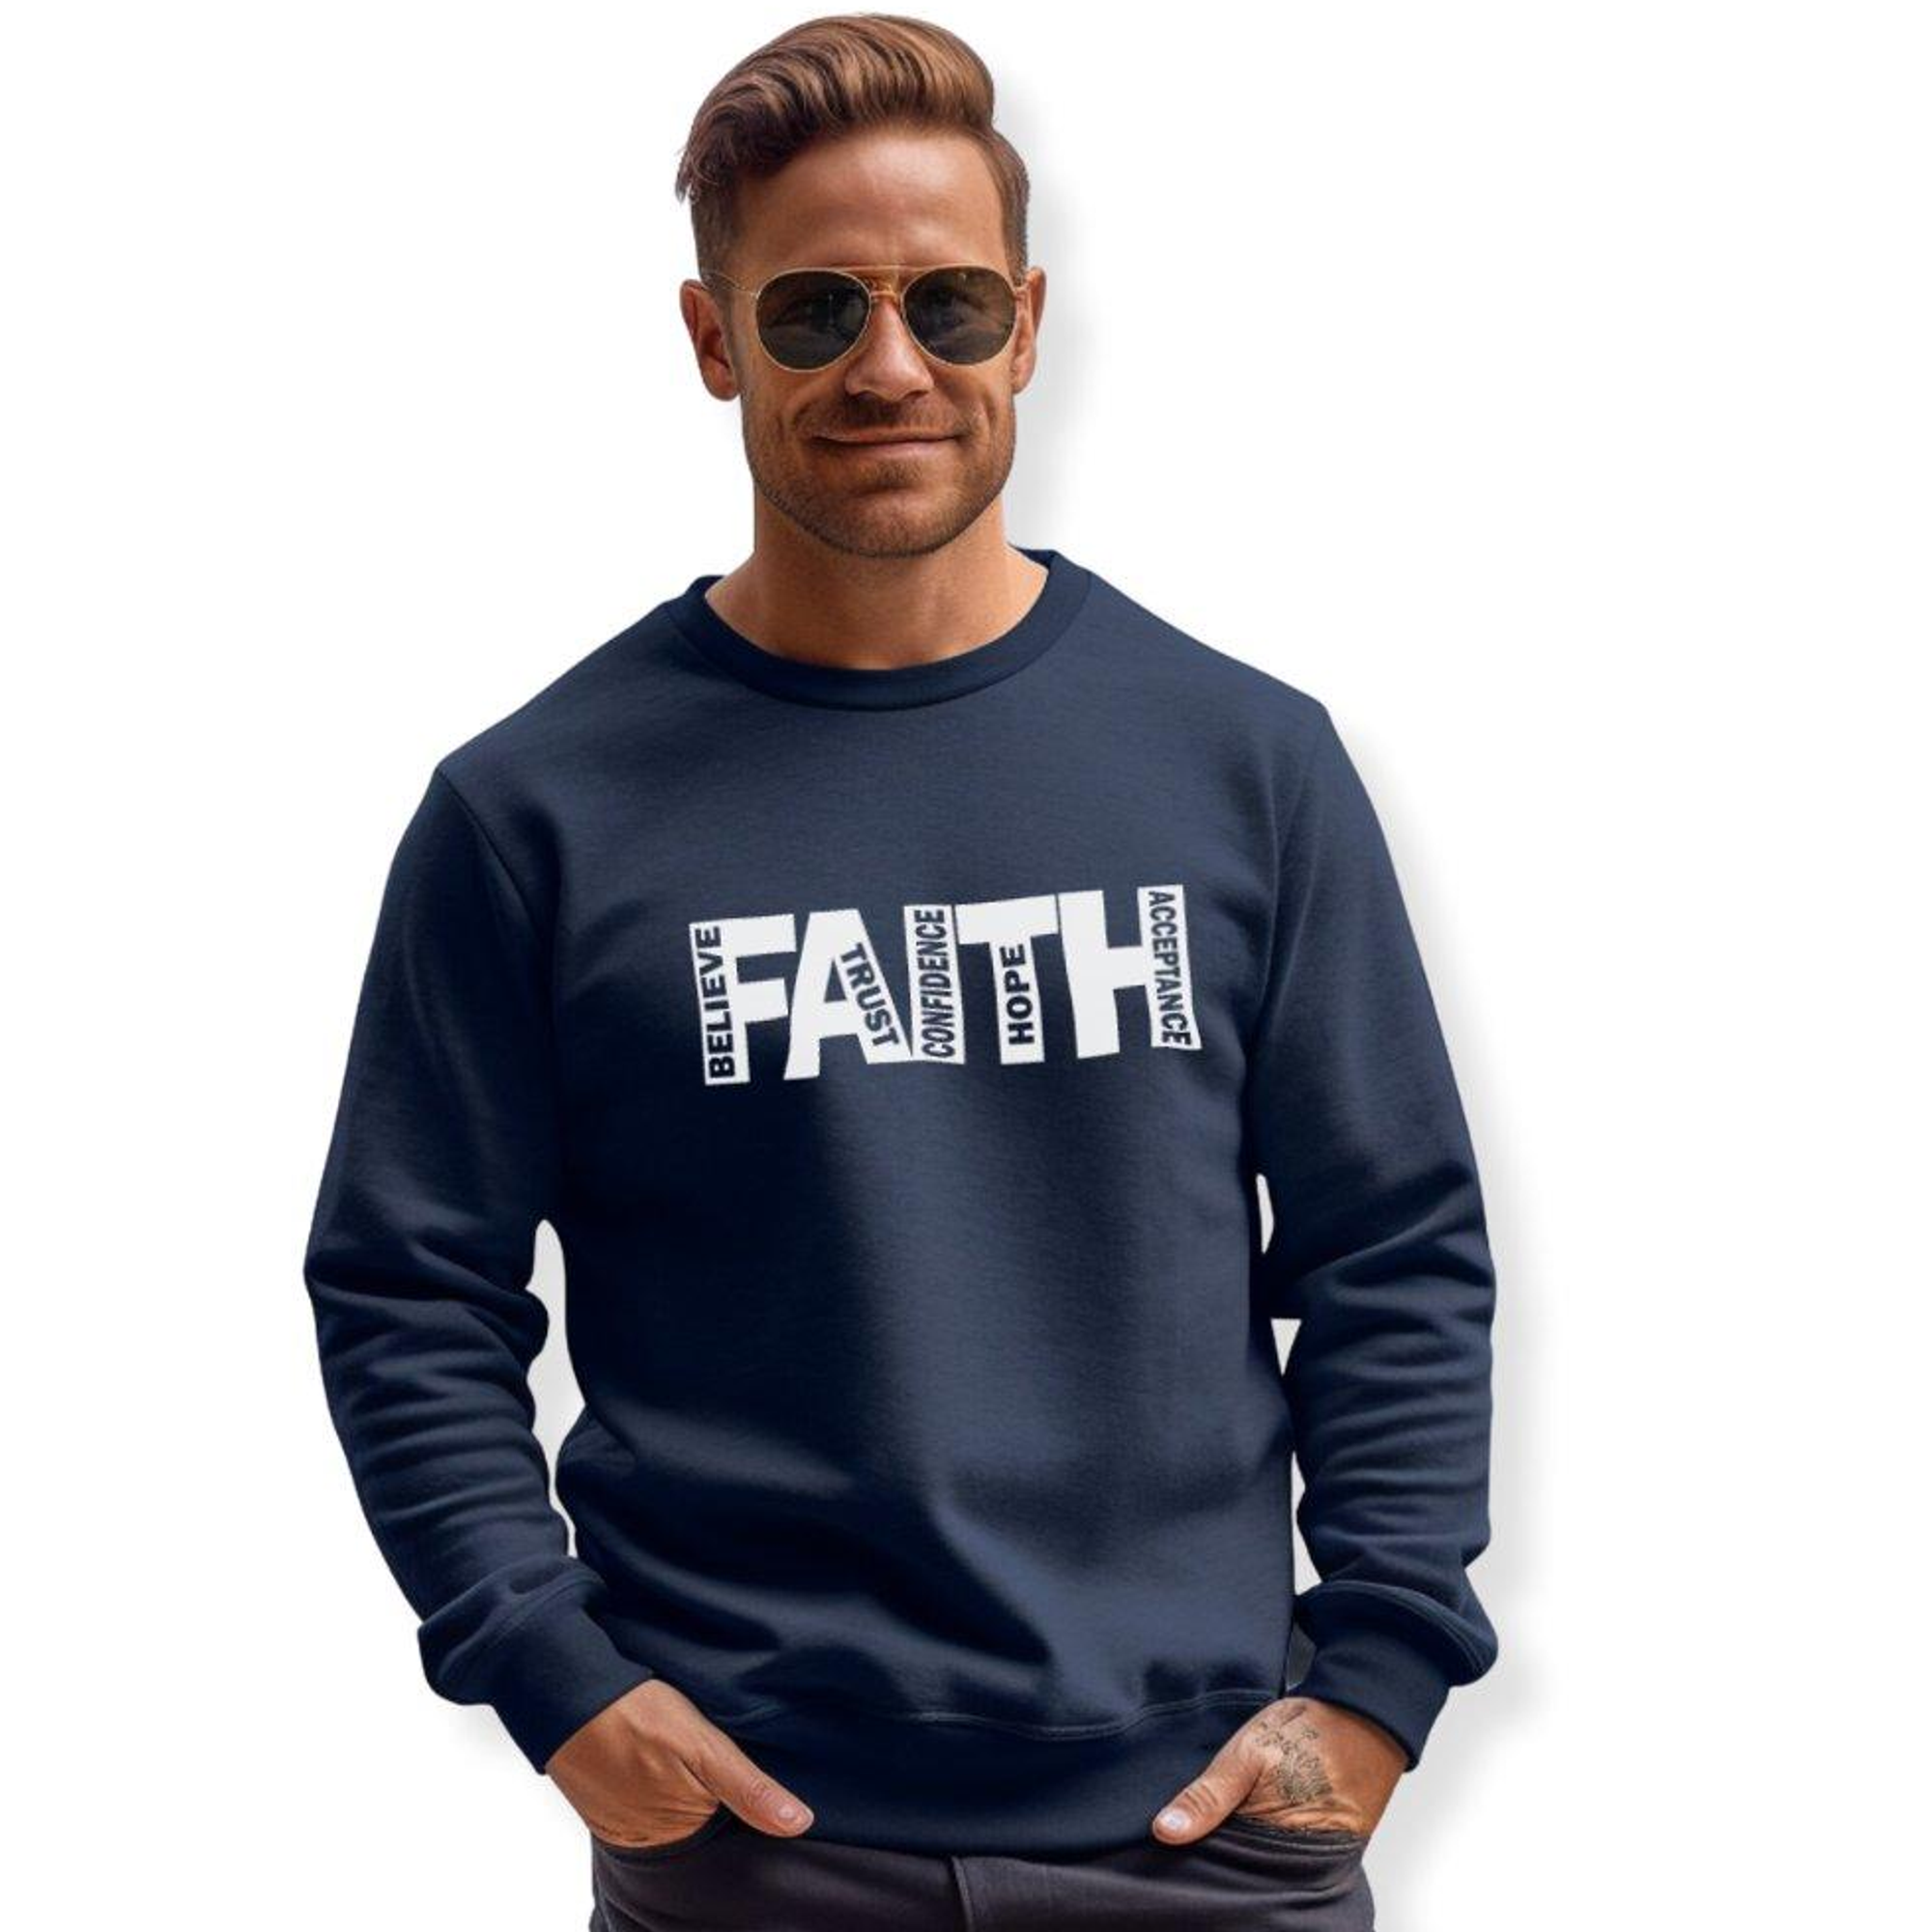 FAITH Believe Trust Hope Acceptance Adult Crewneck Sweatshirt - Navy Size: S Color: Navy Jesus Passion Apparel